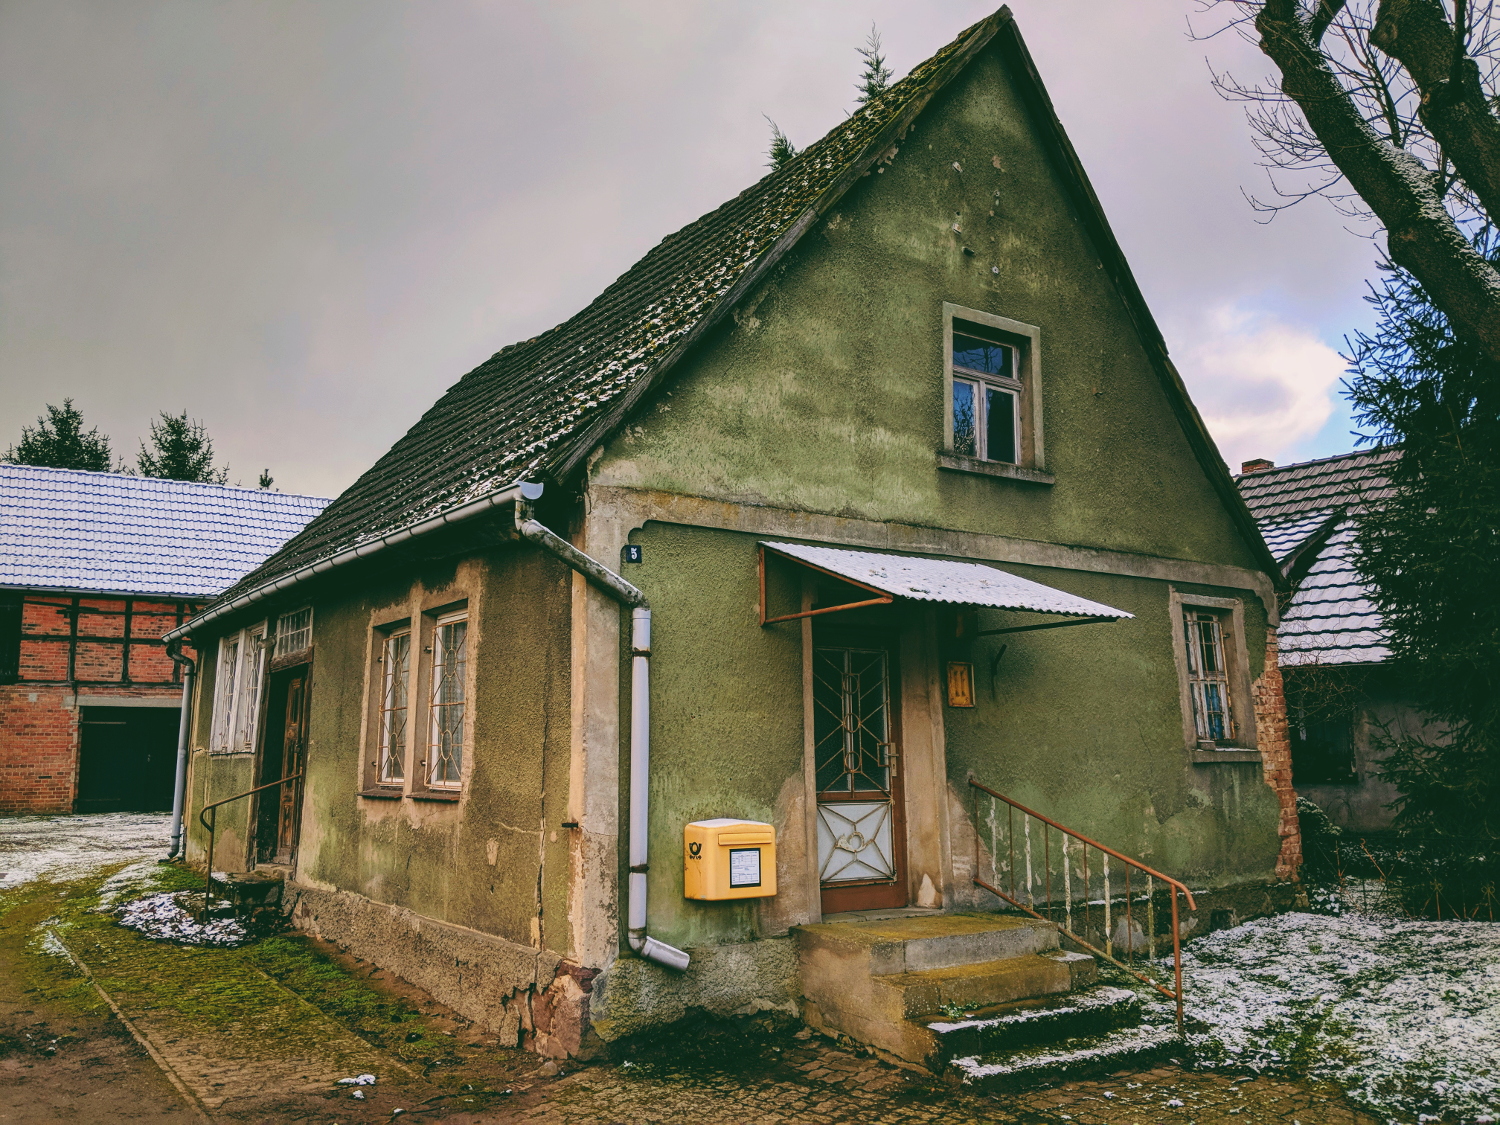 Ehemaliges Postgebäude im Bördedorf Cröchern – heute nur noch ein Briefkasten, Februar 2018